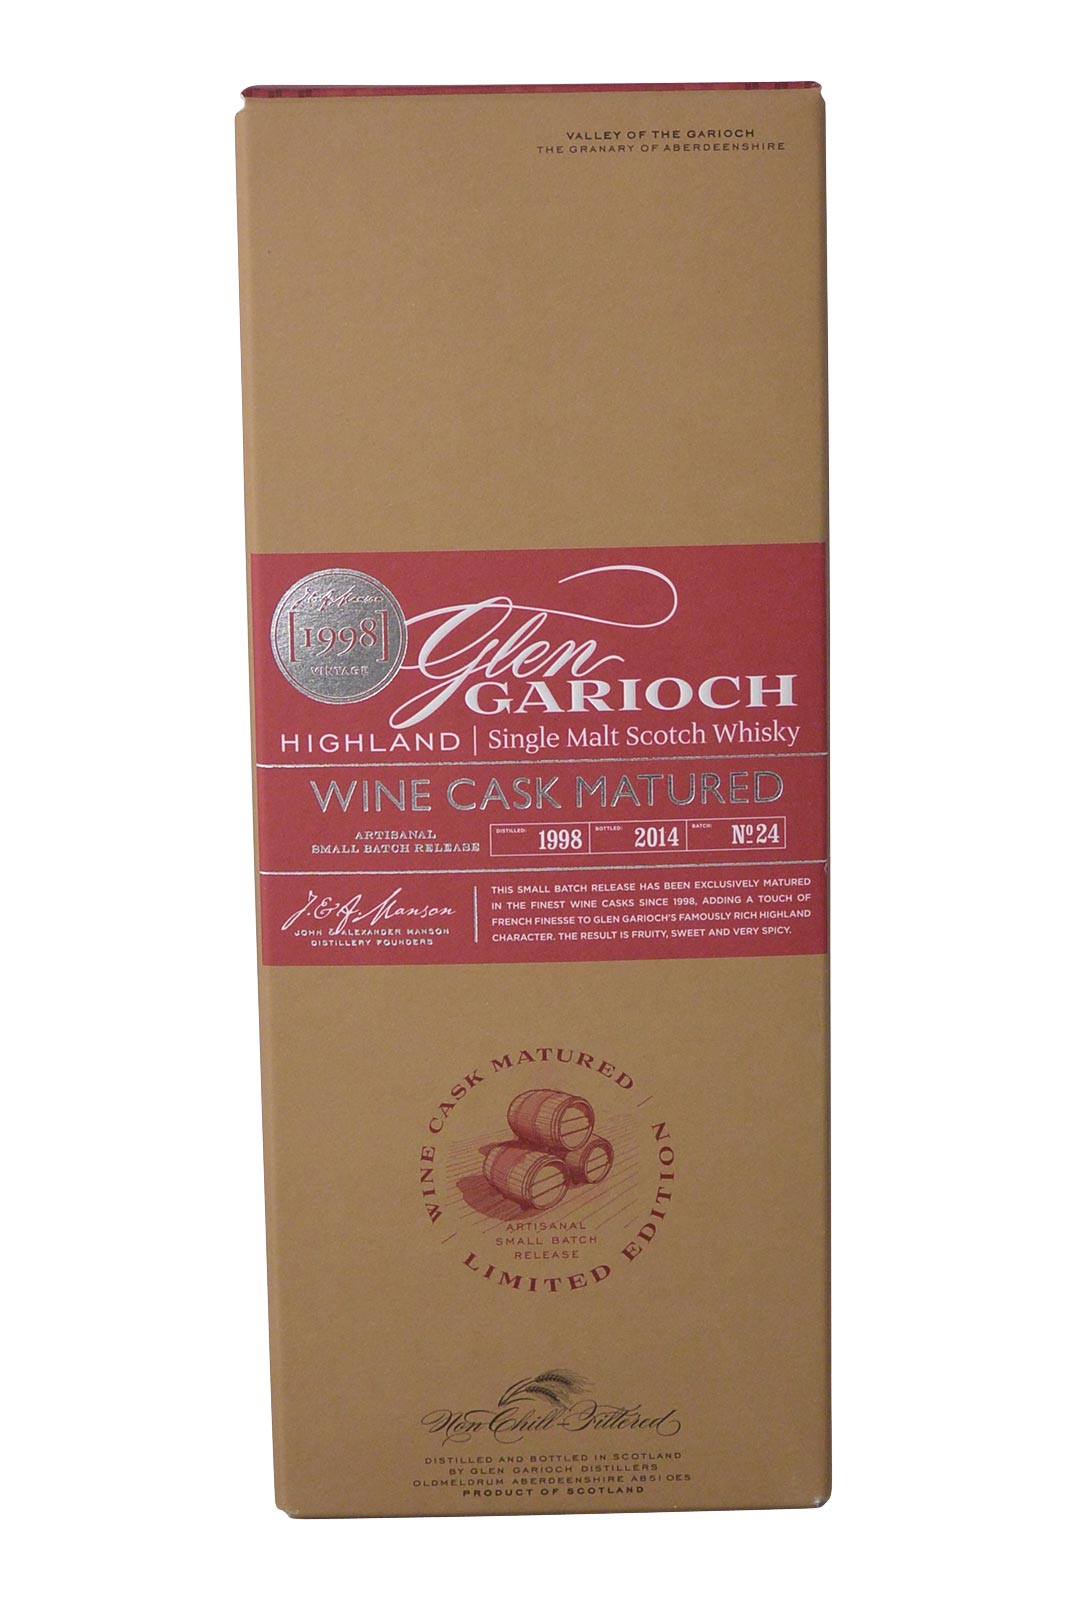 Glen Garioch Wine Cask Matured 1998/2014